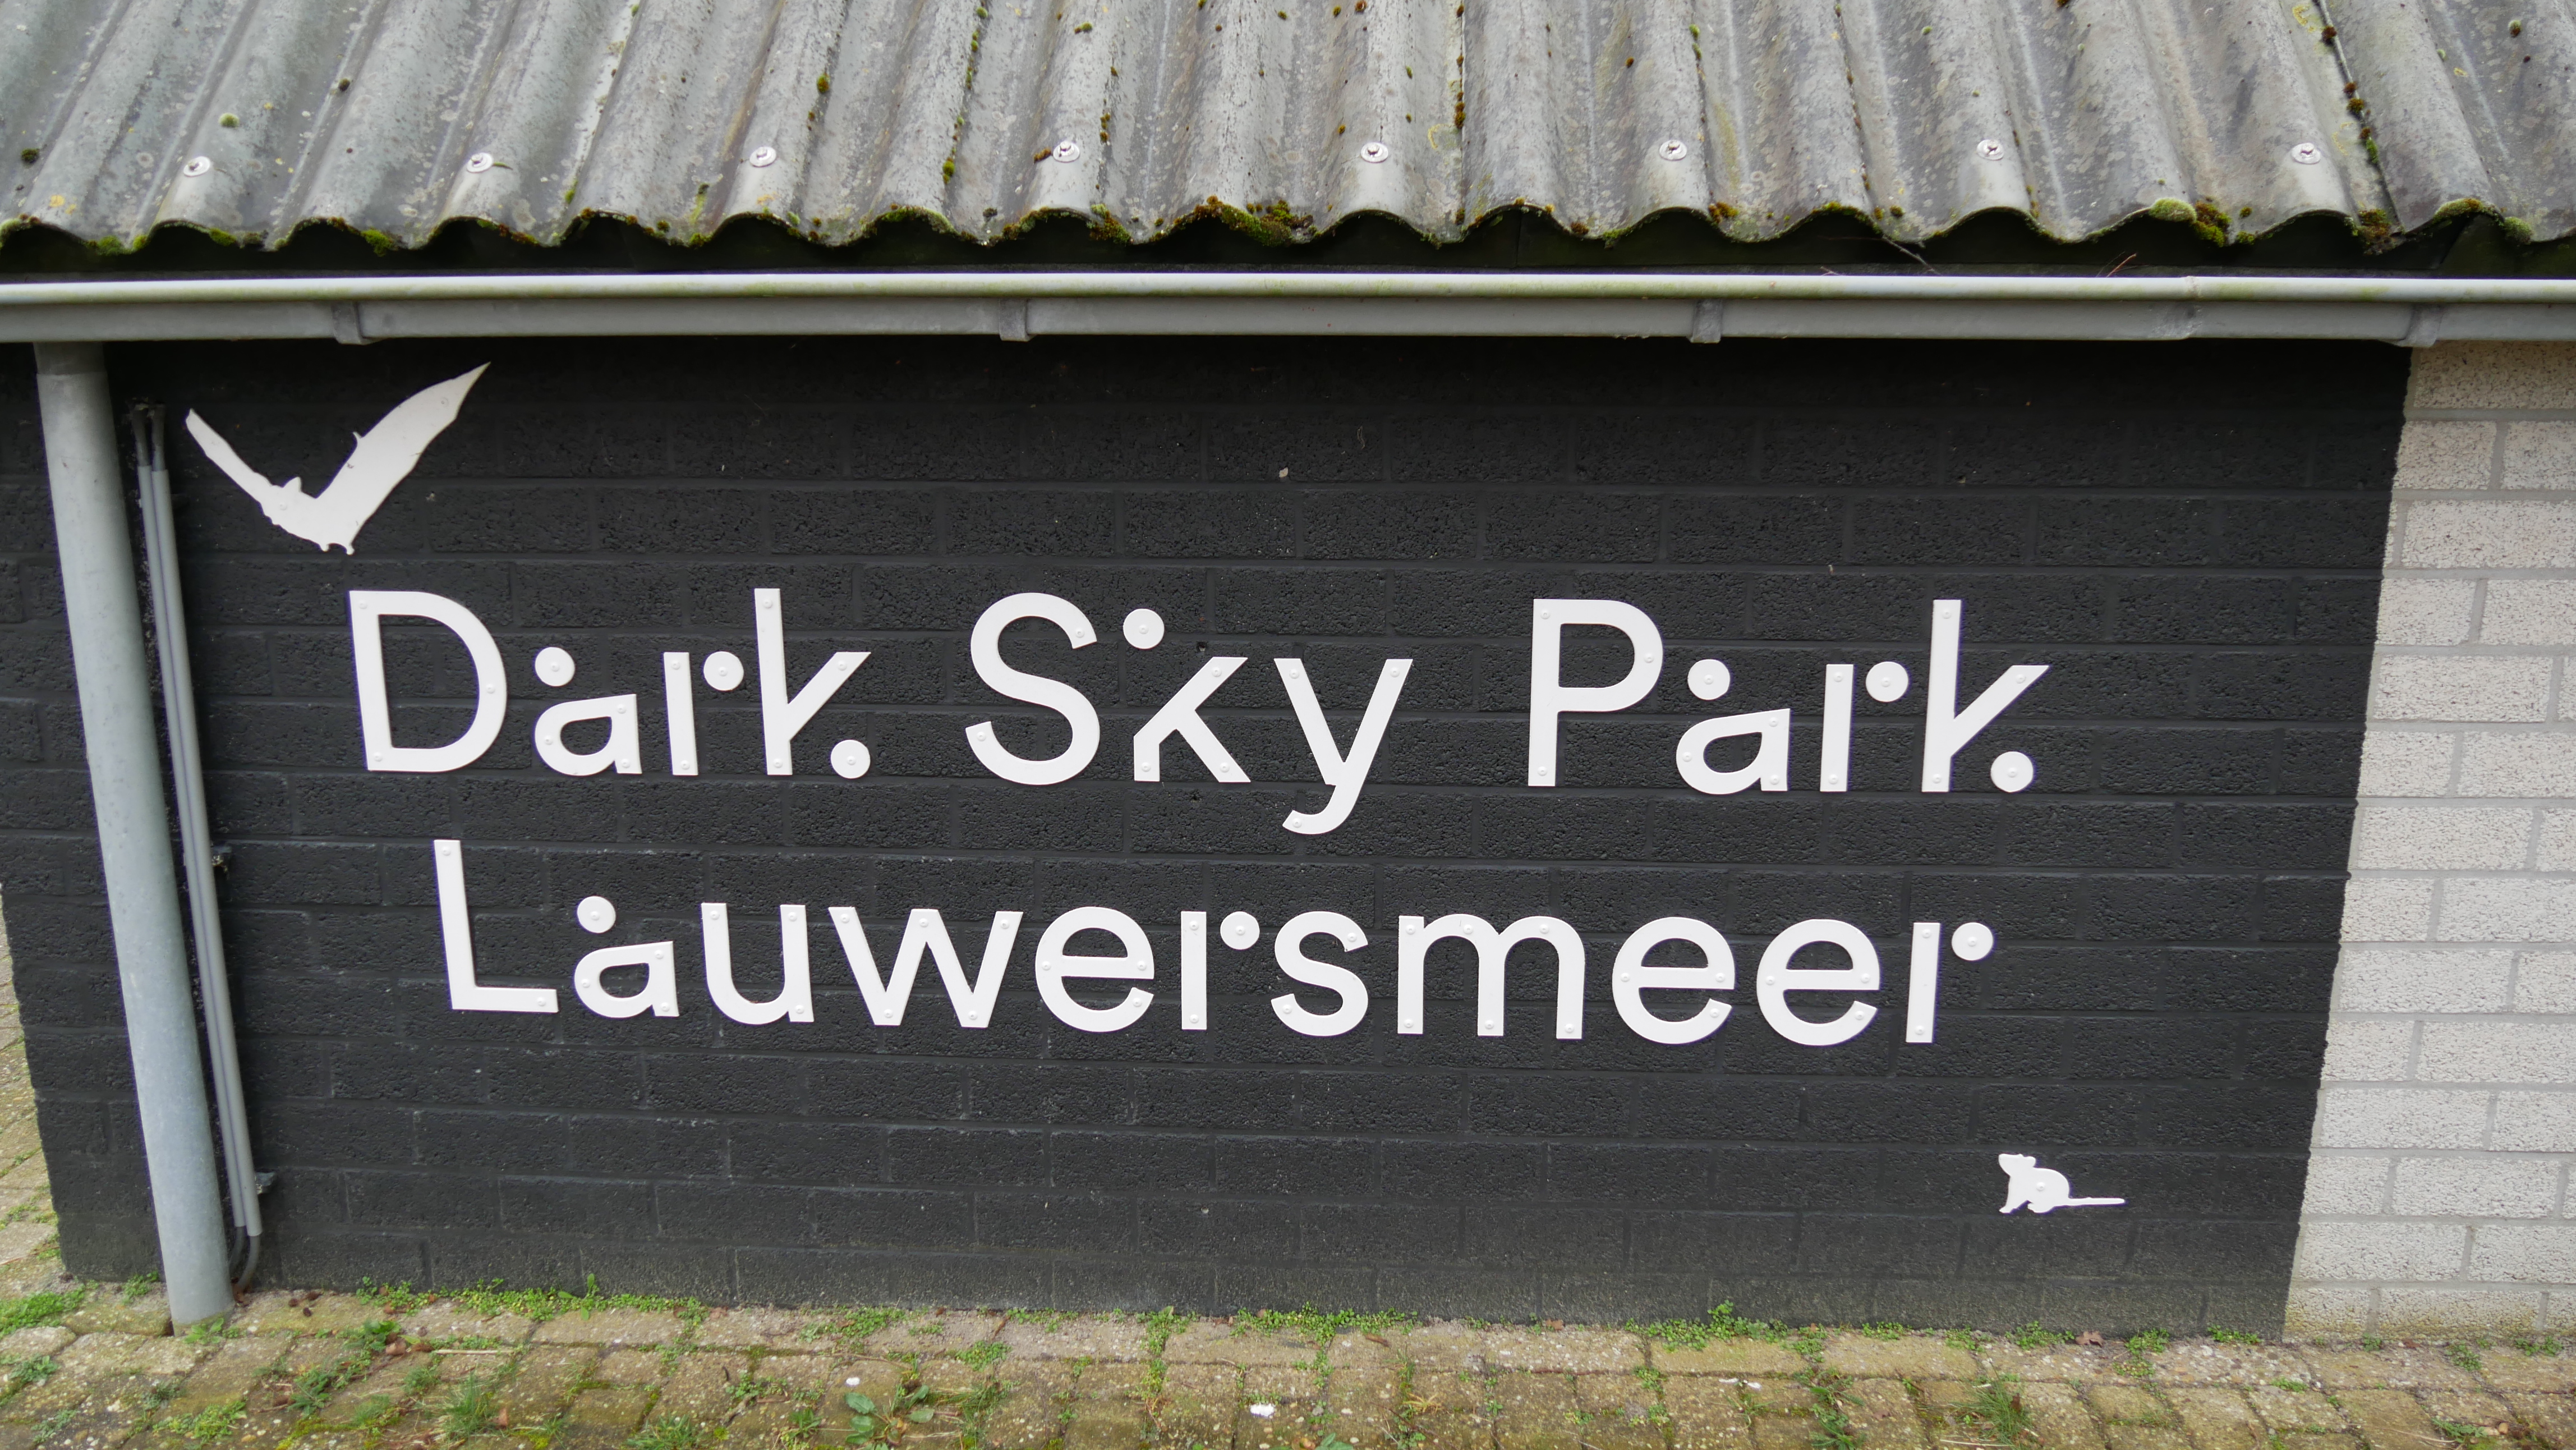 Dark Sky Park Lauwersmeer sign